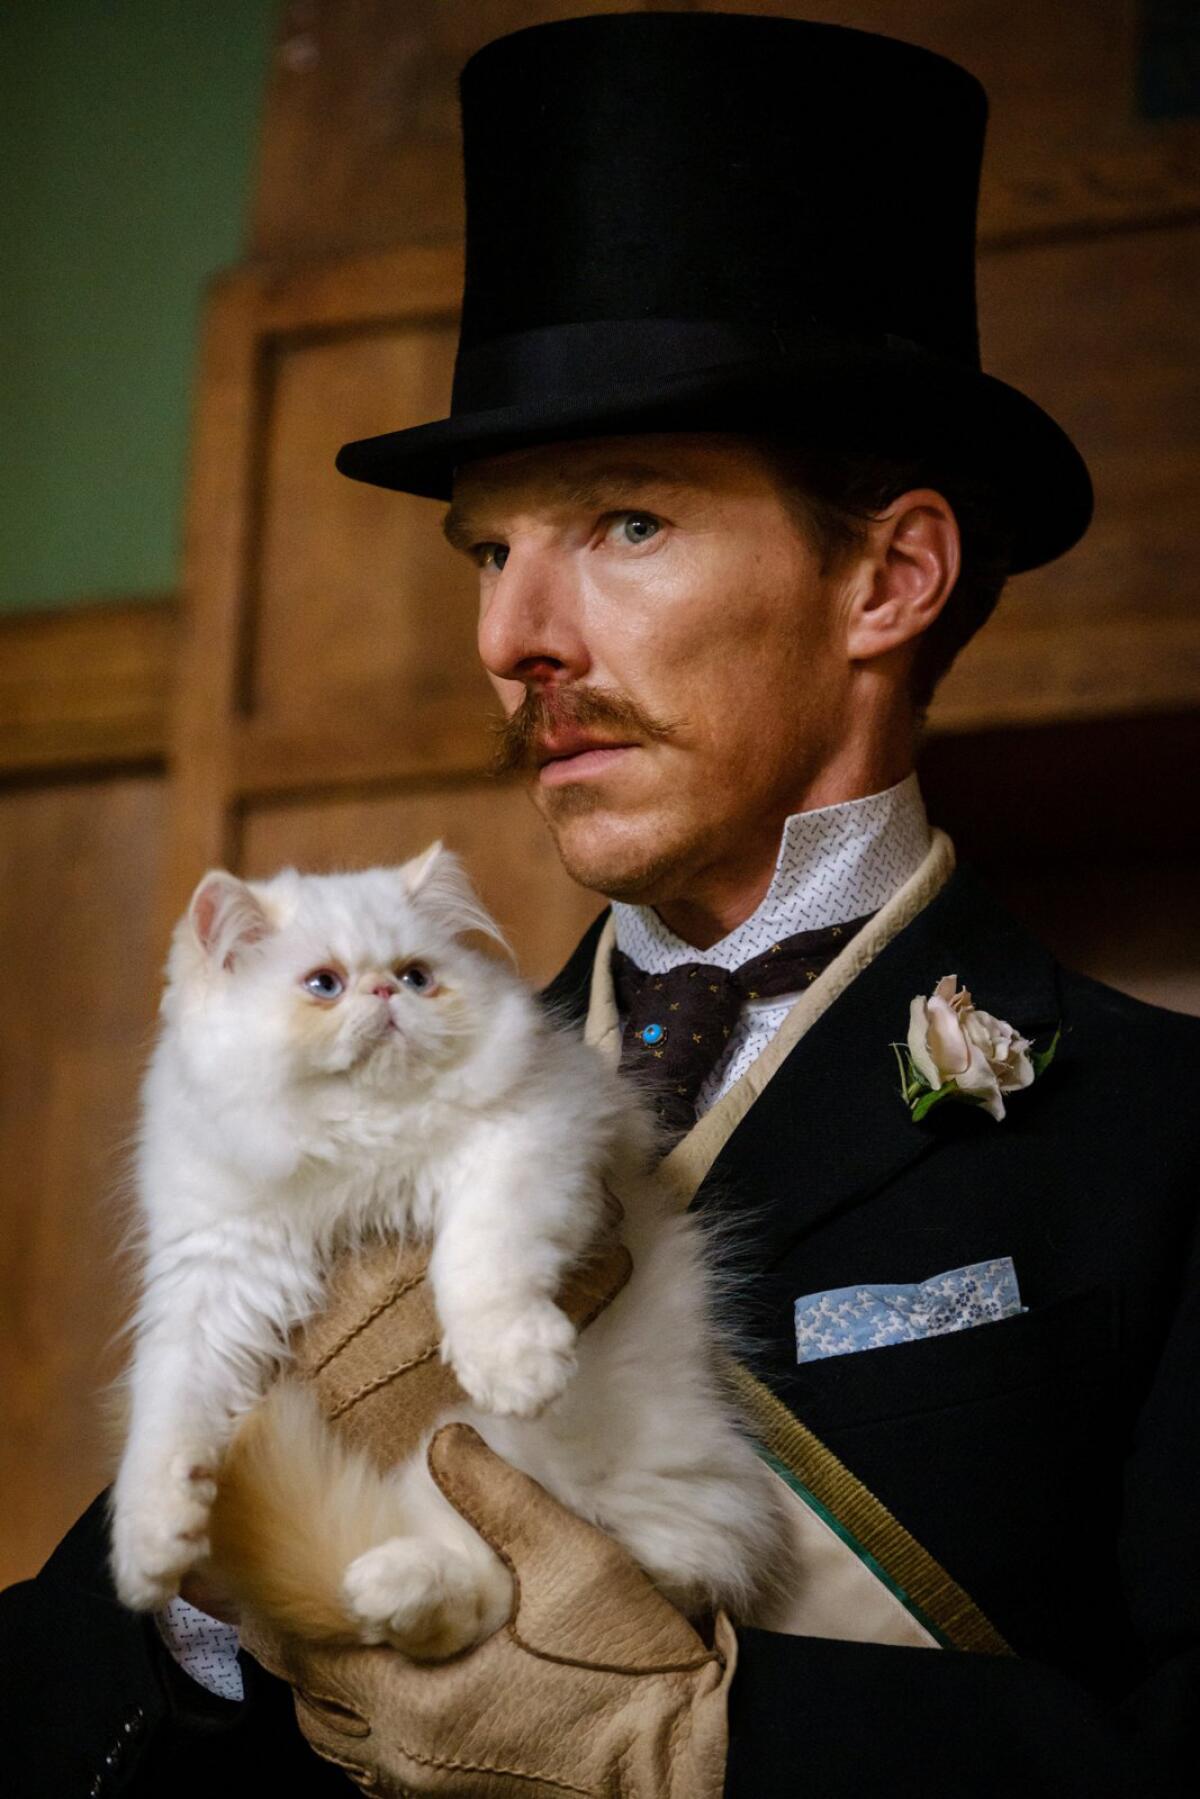 Benedict Cumberbatch in a top hat holding a white cat